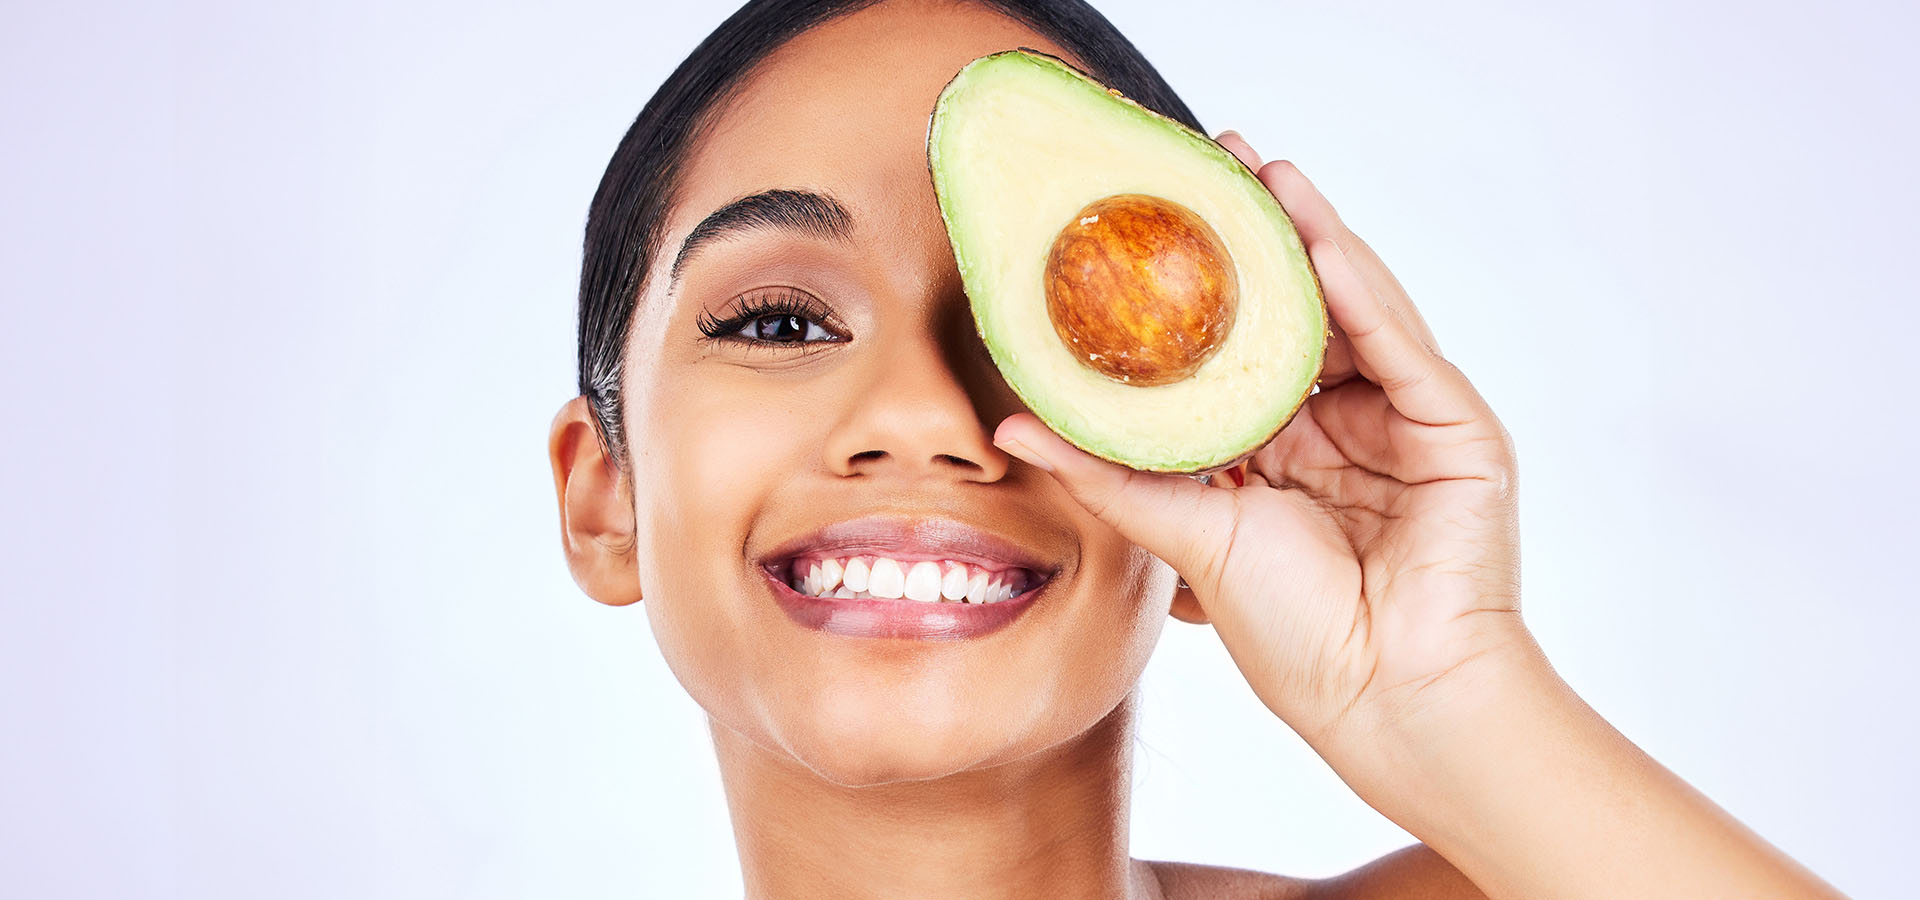 Bild einer Frau, die Avocado-Gesichtspflege durchführt, im Kontext von Omega-3 für die Augengesundheit.